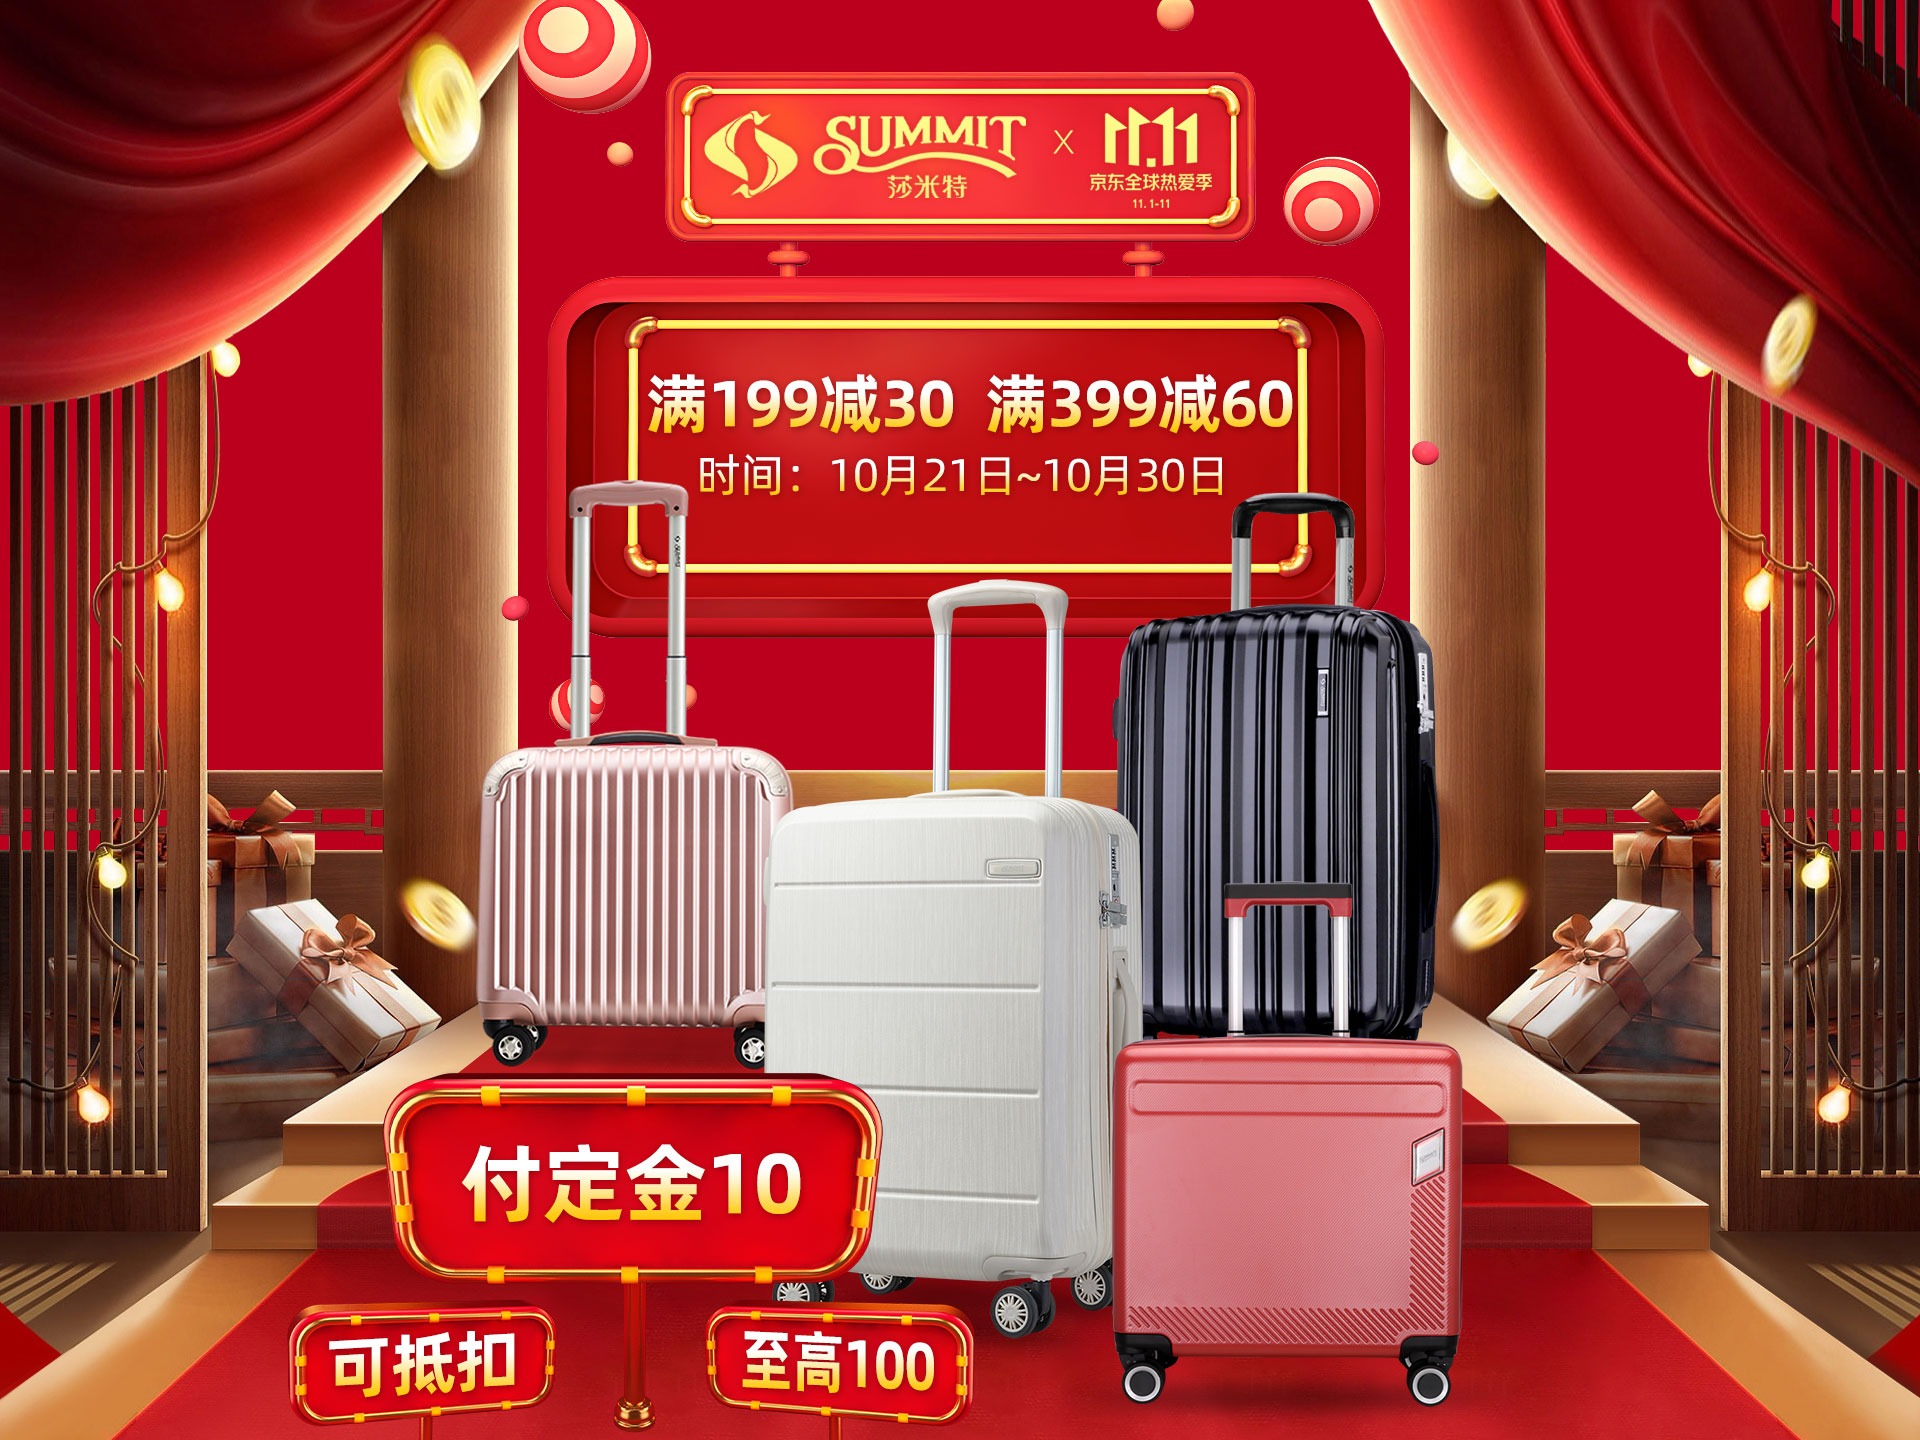 選一個不會與人撞色的行李箱 - ROAM 客製化行李箱在線上即可完成 - EVERYDAY OBJECT